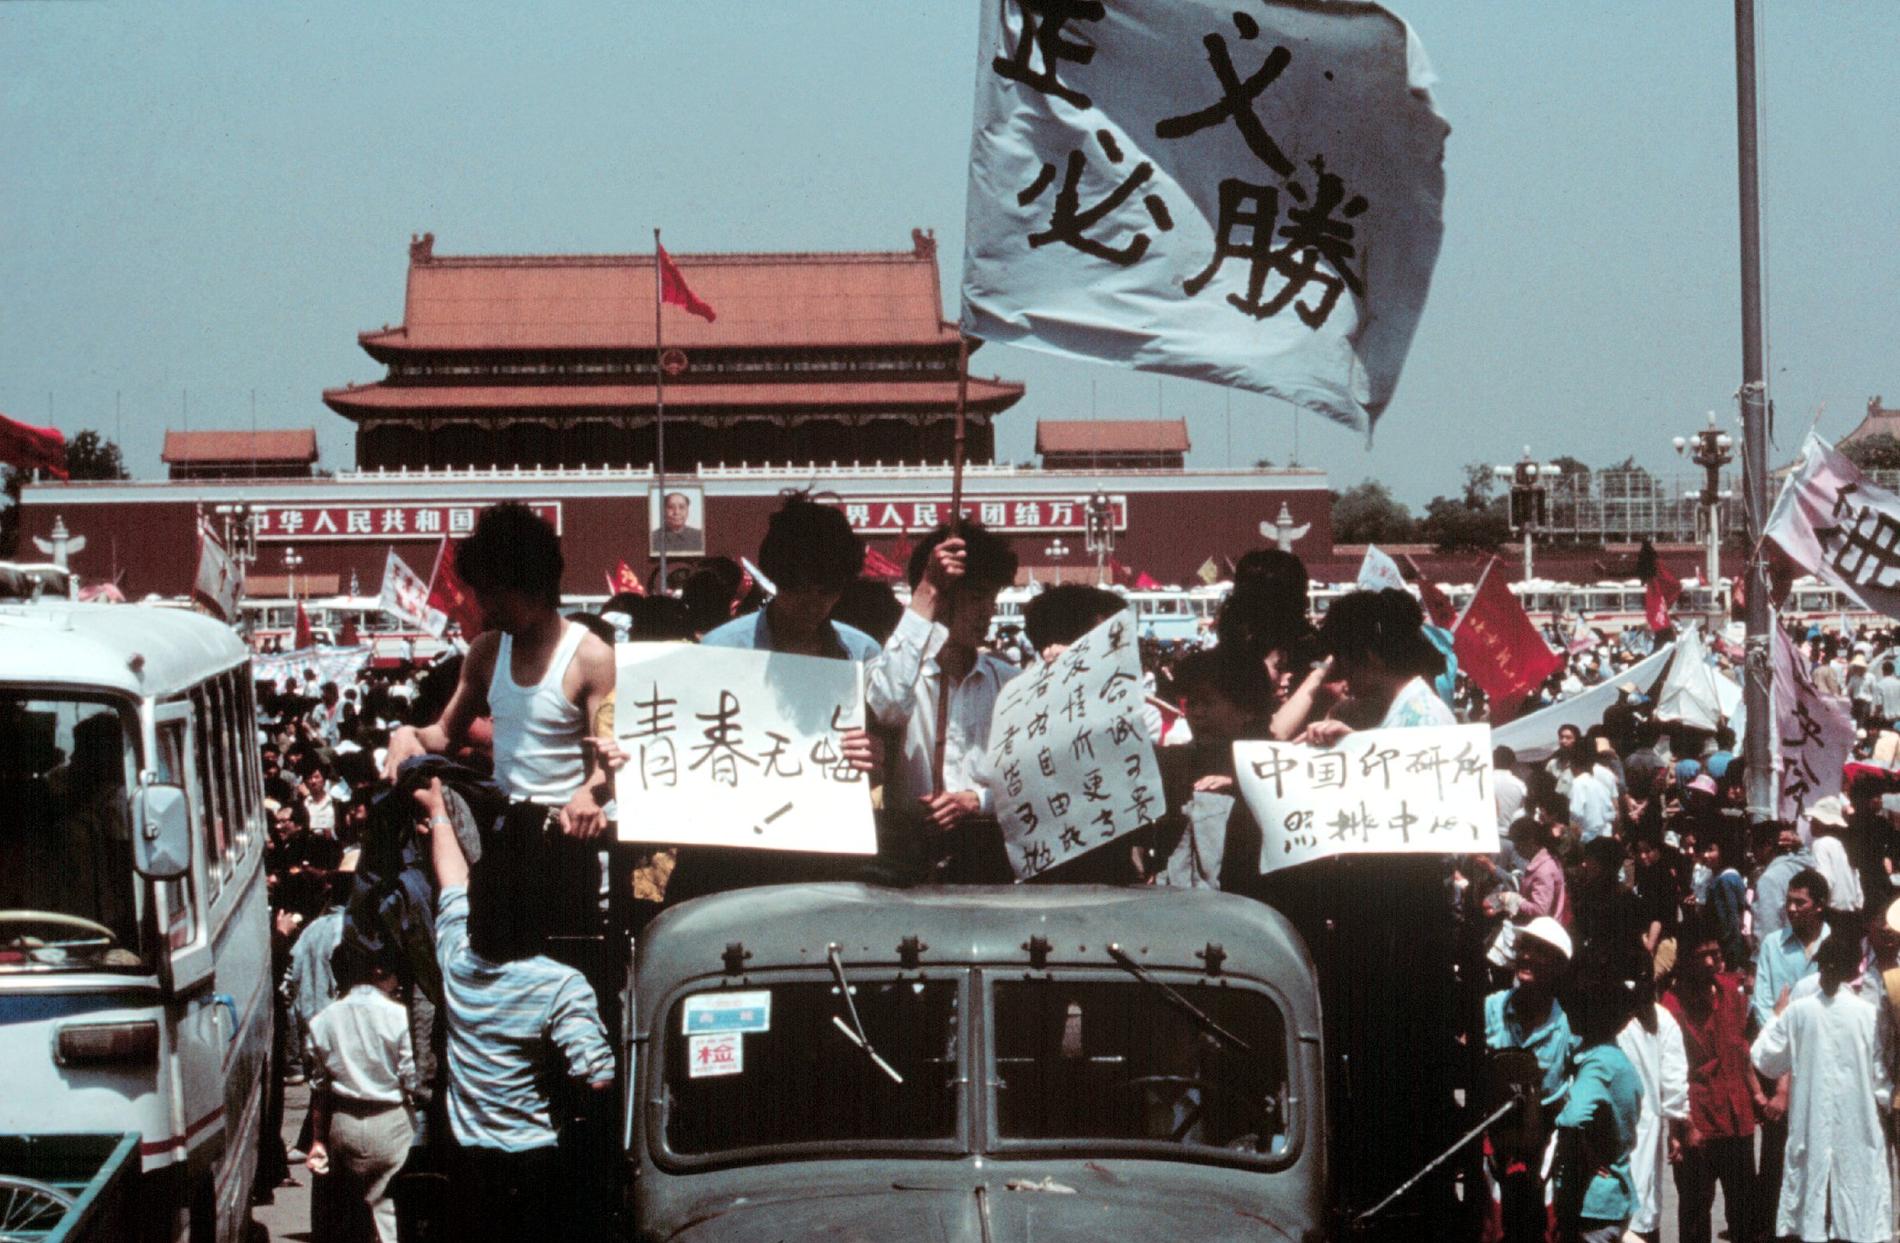 Studenterna står på flaket till en lastbil med flaggor och affischer med slagord.